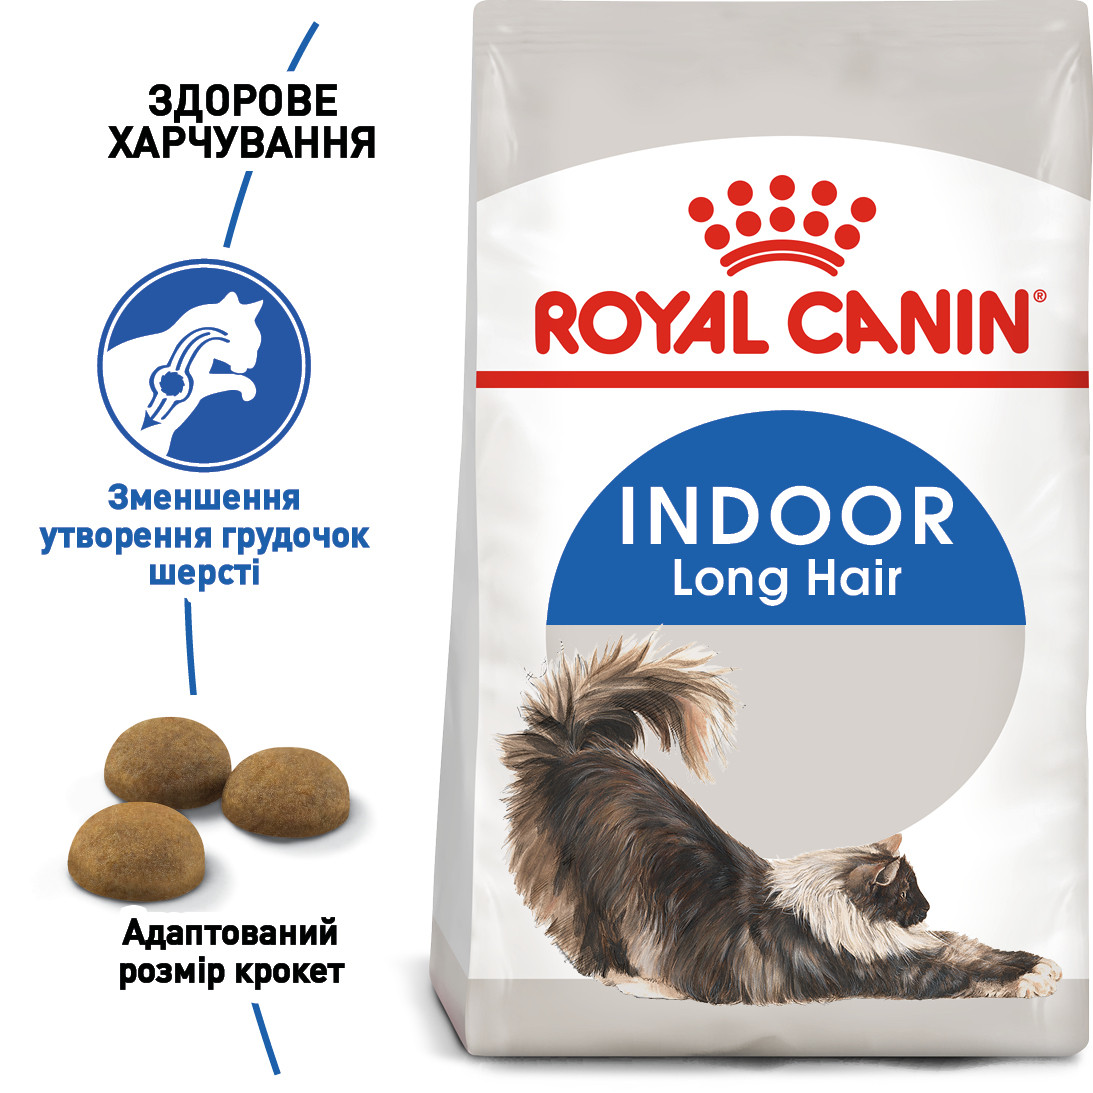 Royal Canin Indoor Long Hair 35 сухий корм для довгошерстих кішок від 12 місяців до 7 років, 2КГ, фото 1